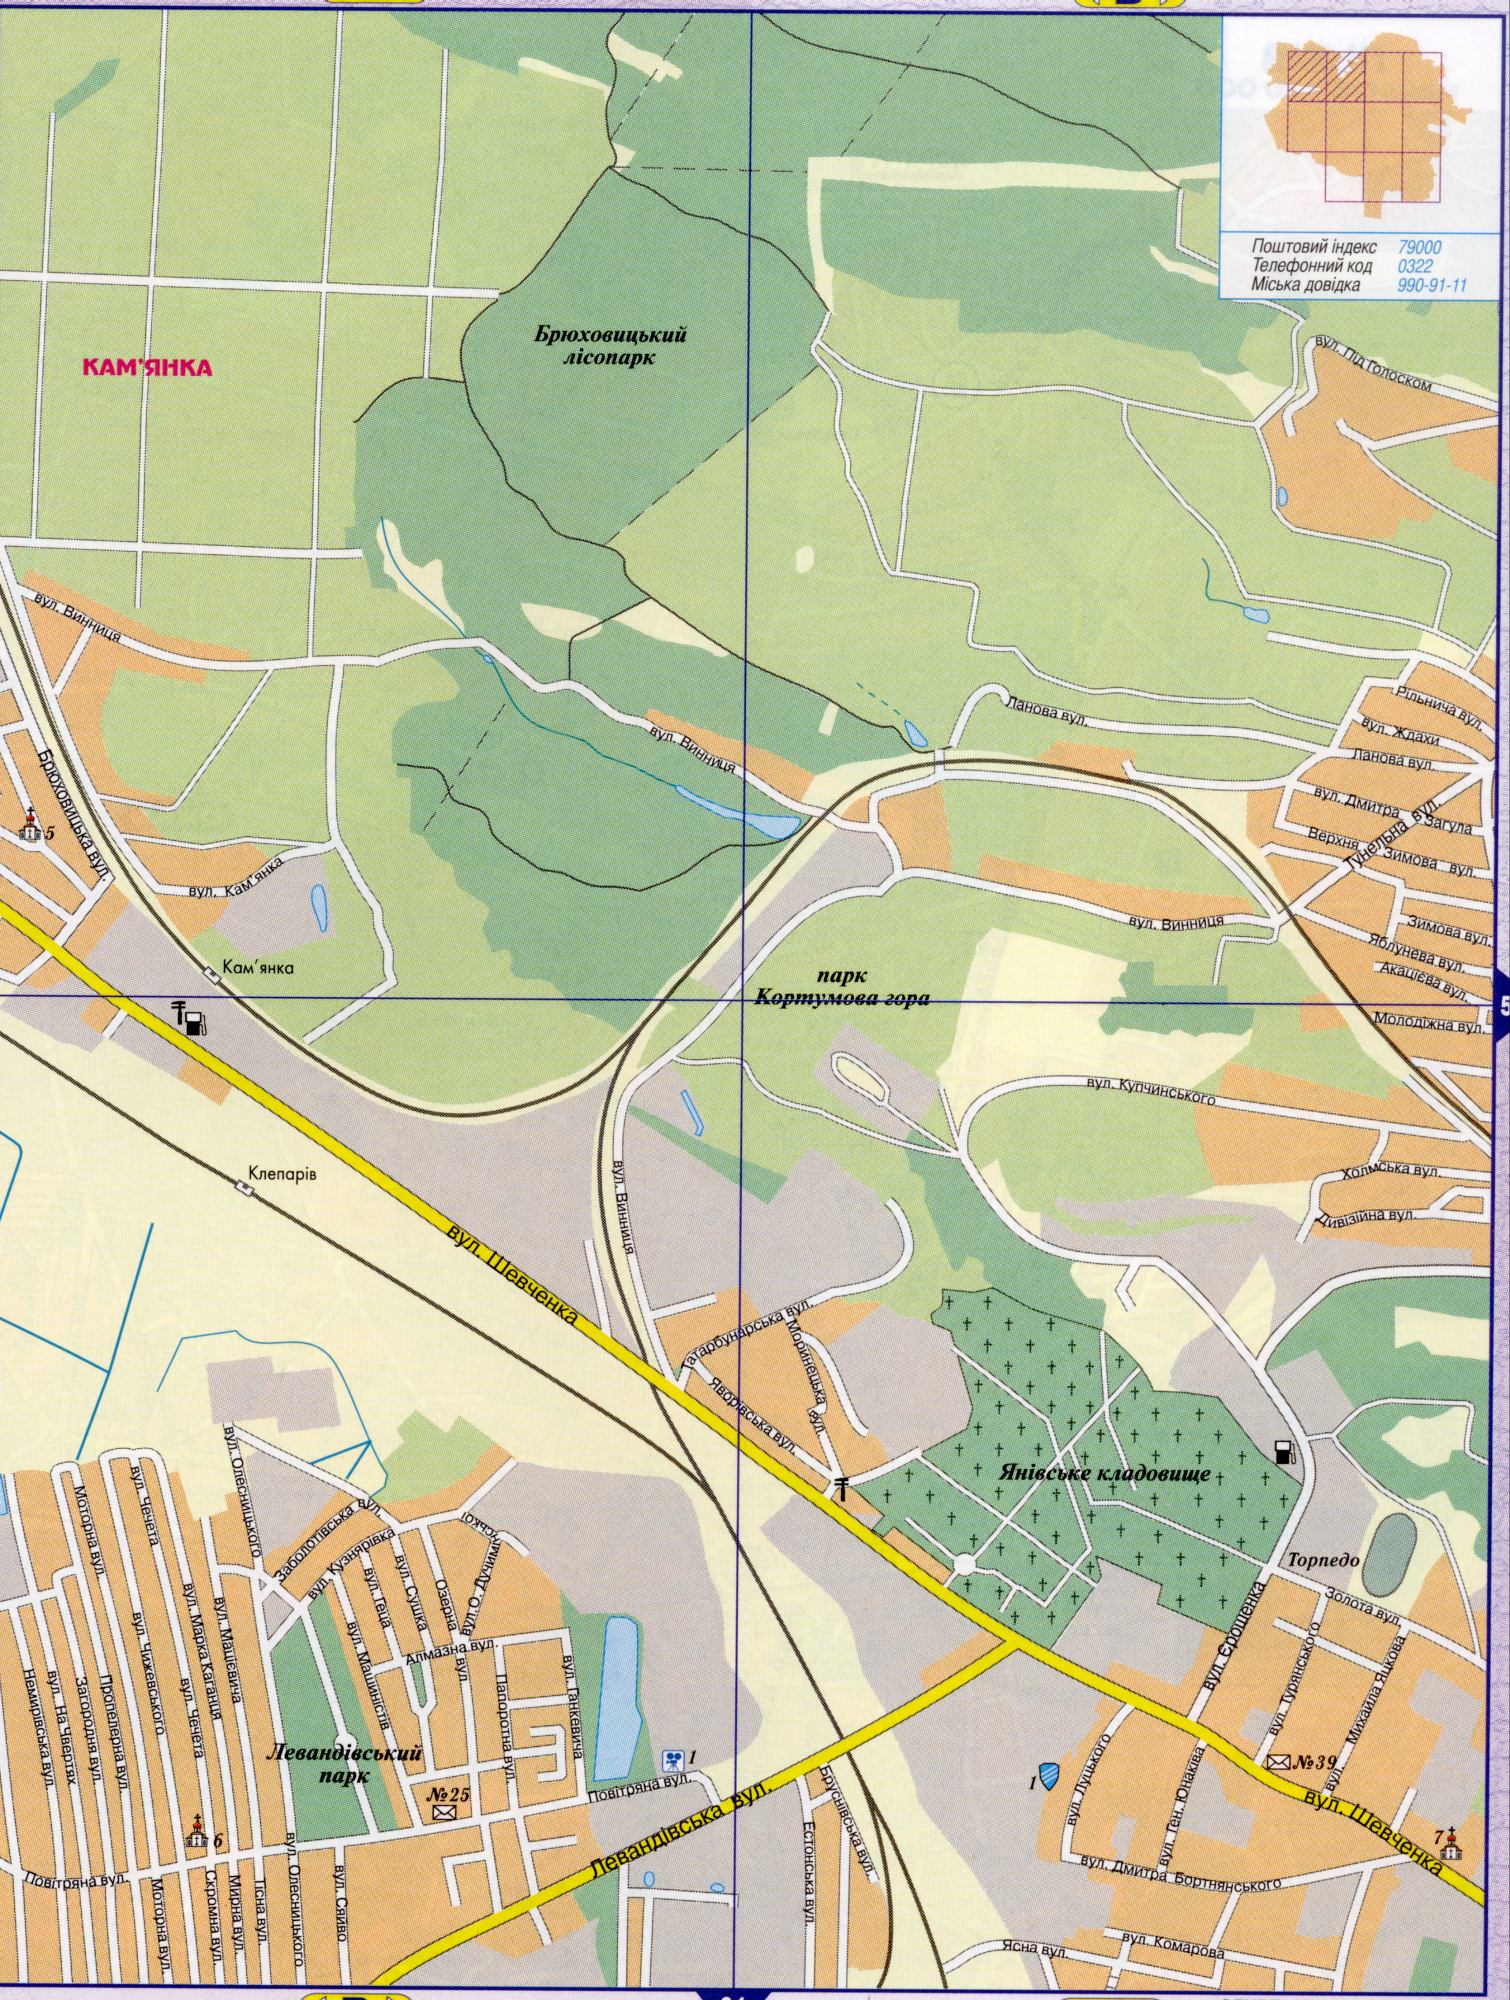 Карта Львова докладна, масштаб в 1 см 200 метрів. Обласний центр Львівської області. Завантажити безкоштовно, B0